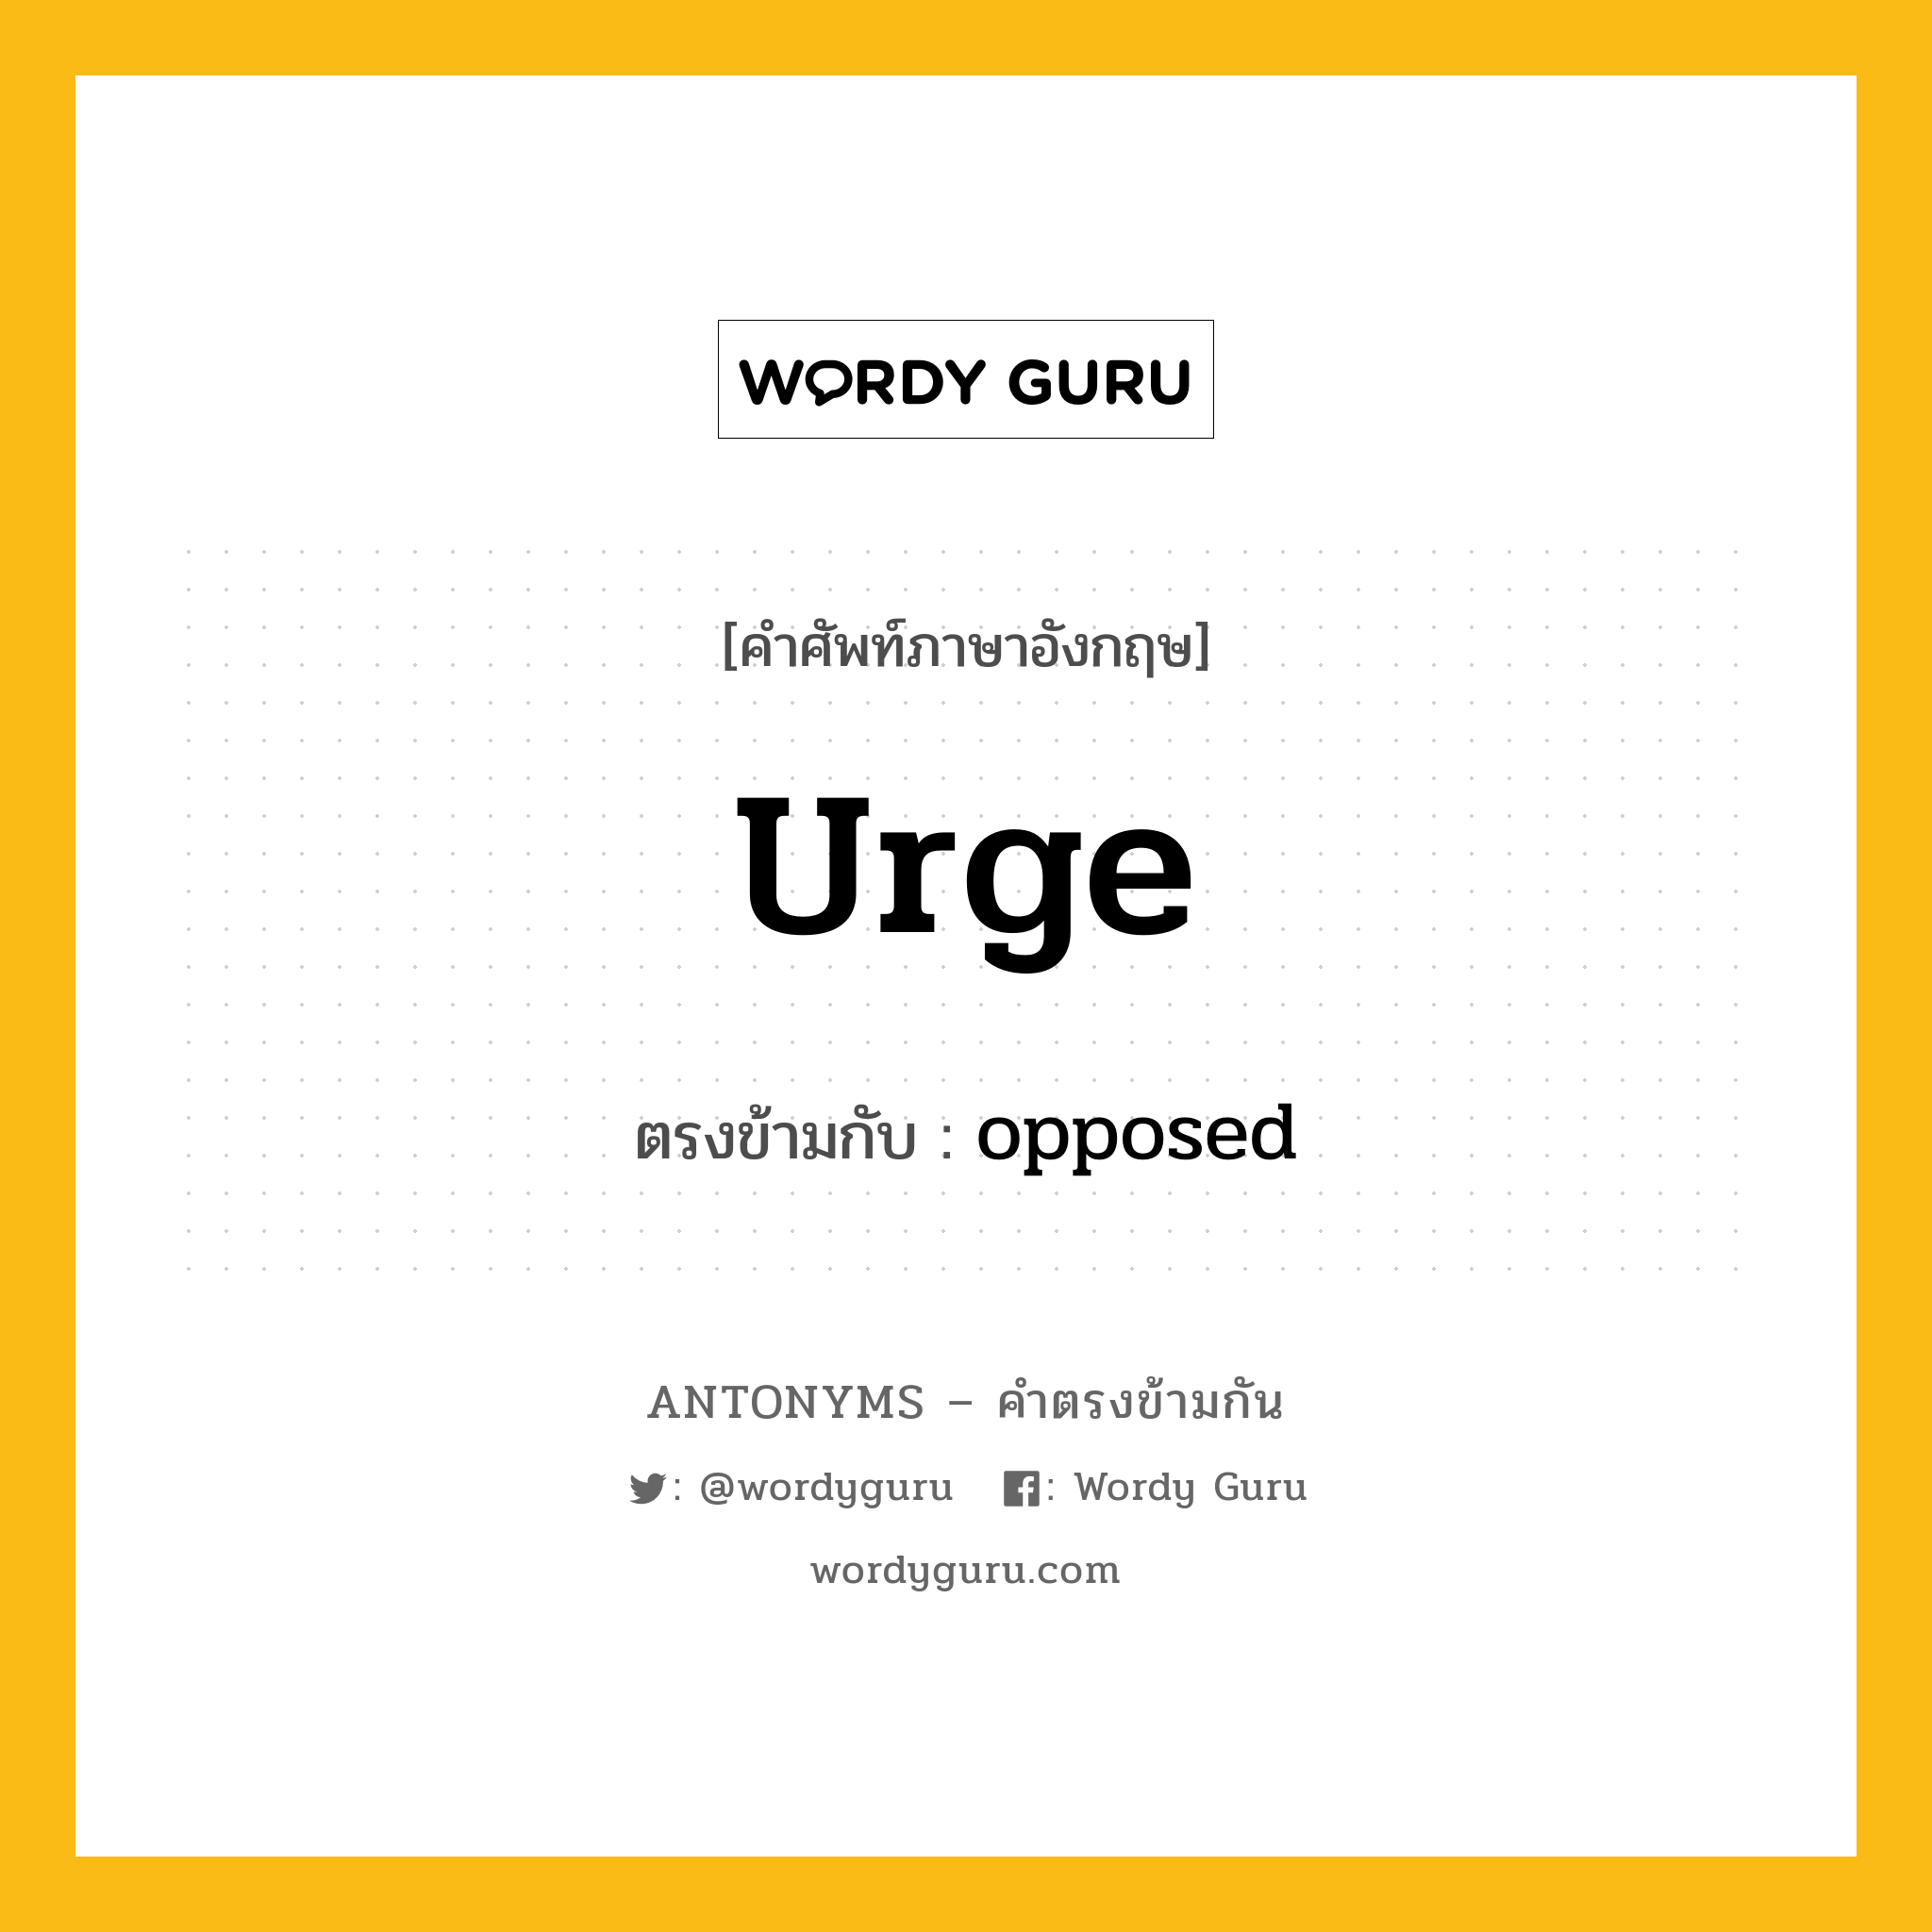 urge เป็นคำตรงข้ามกับคำไหนบ้าง?, คำศัพท์ภาษาอังกฤษ urge ตรงข้ามกับ opposed หมวด opposed